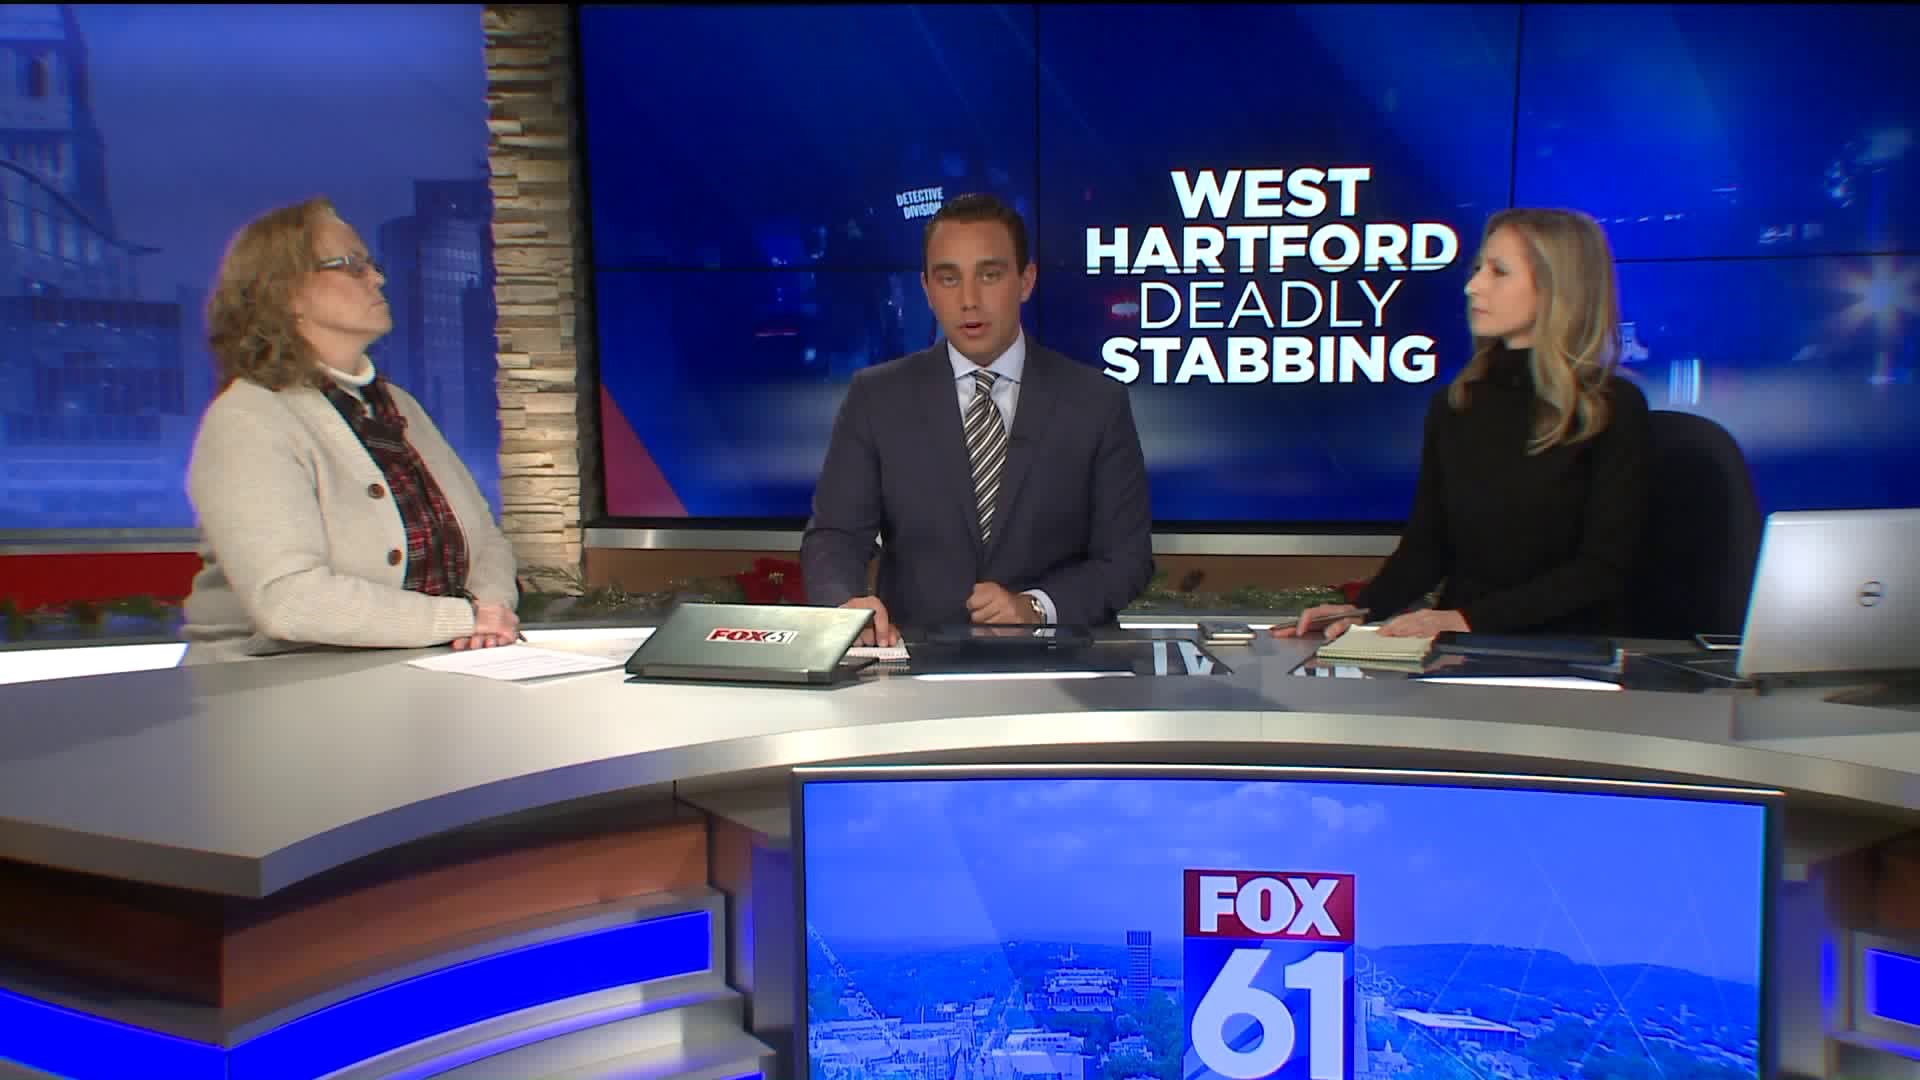 Dr. Saunders on West Hartford stabbing